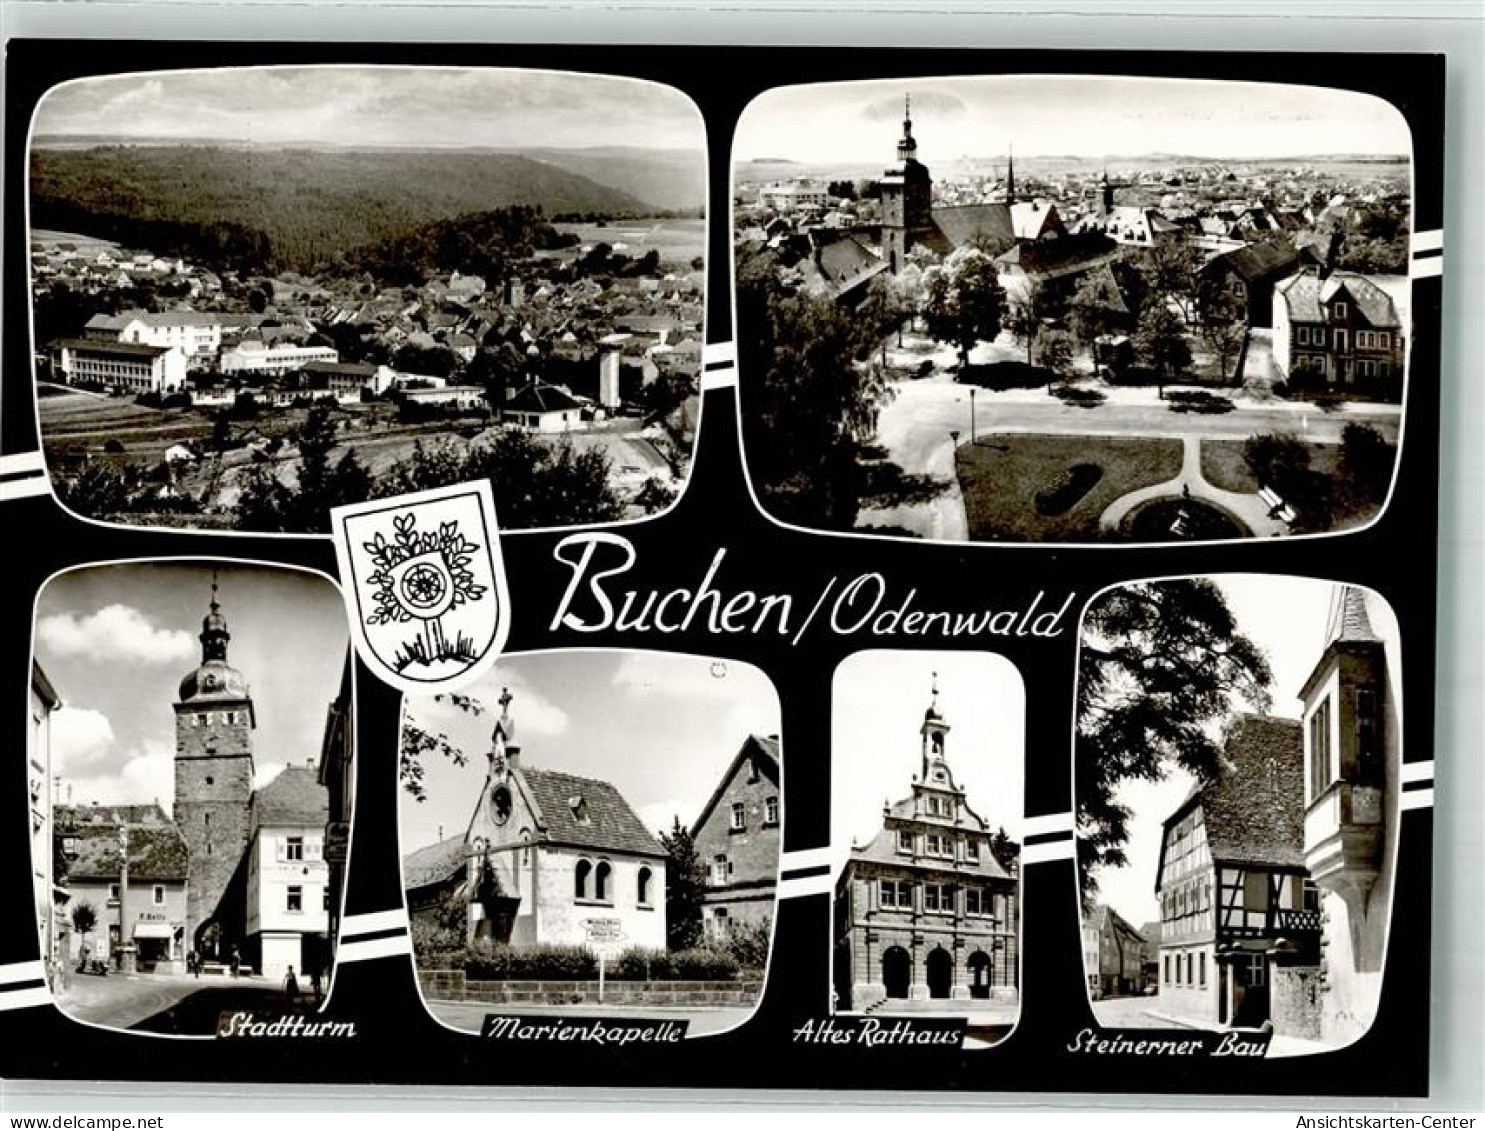 39841106 - Buchen Odenwald - Buchen